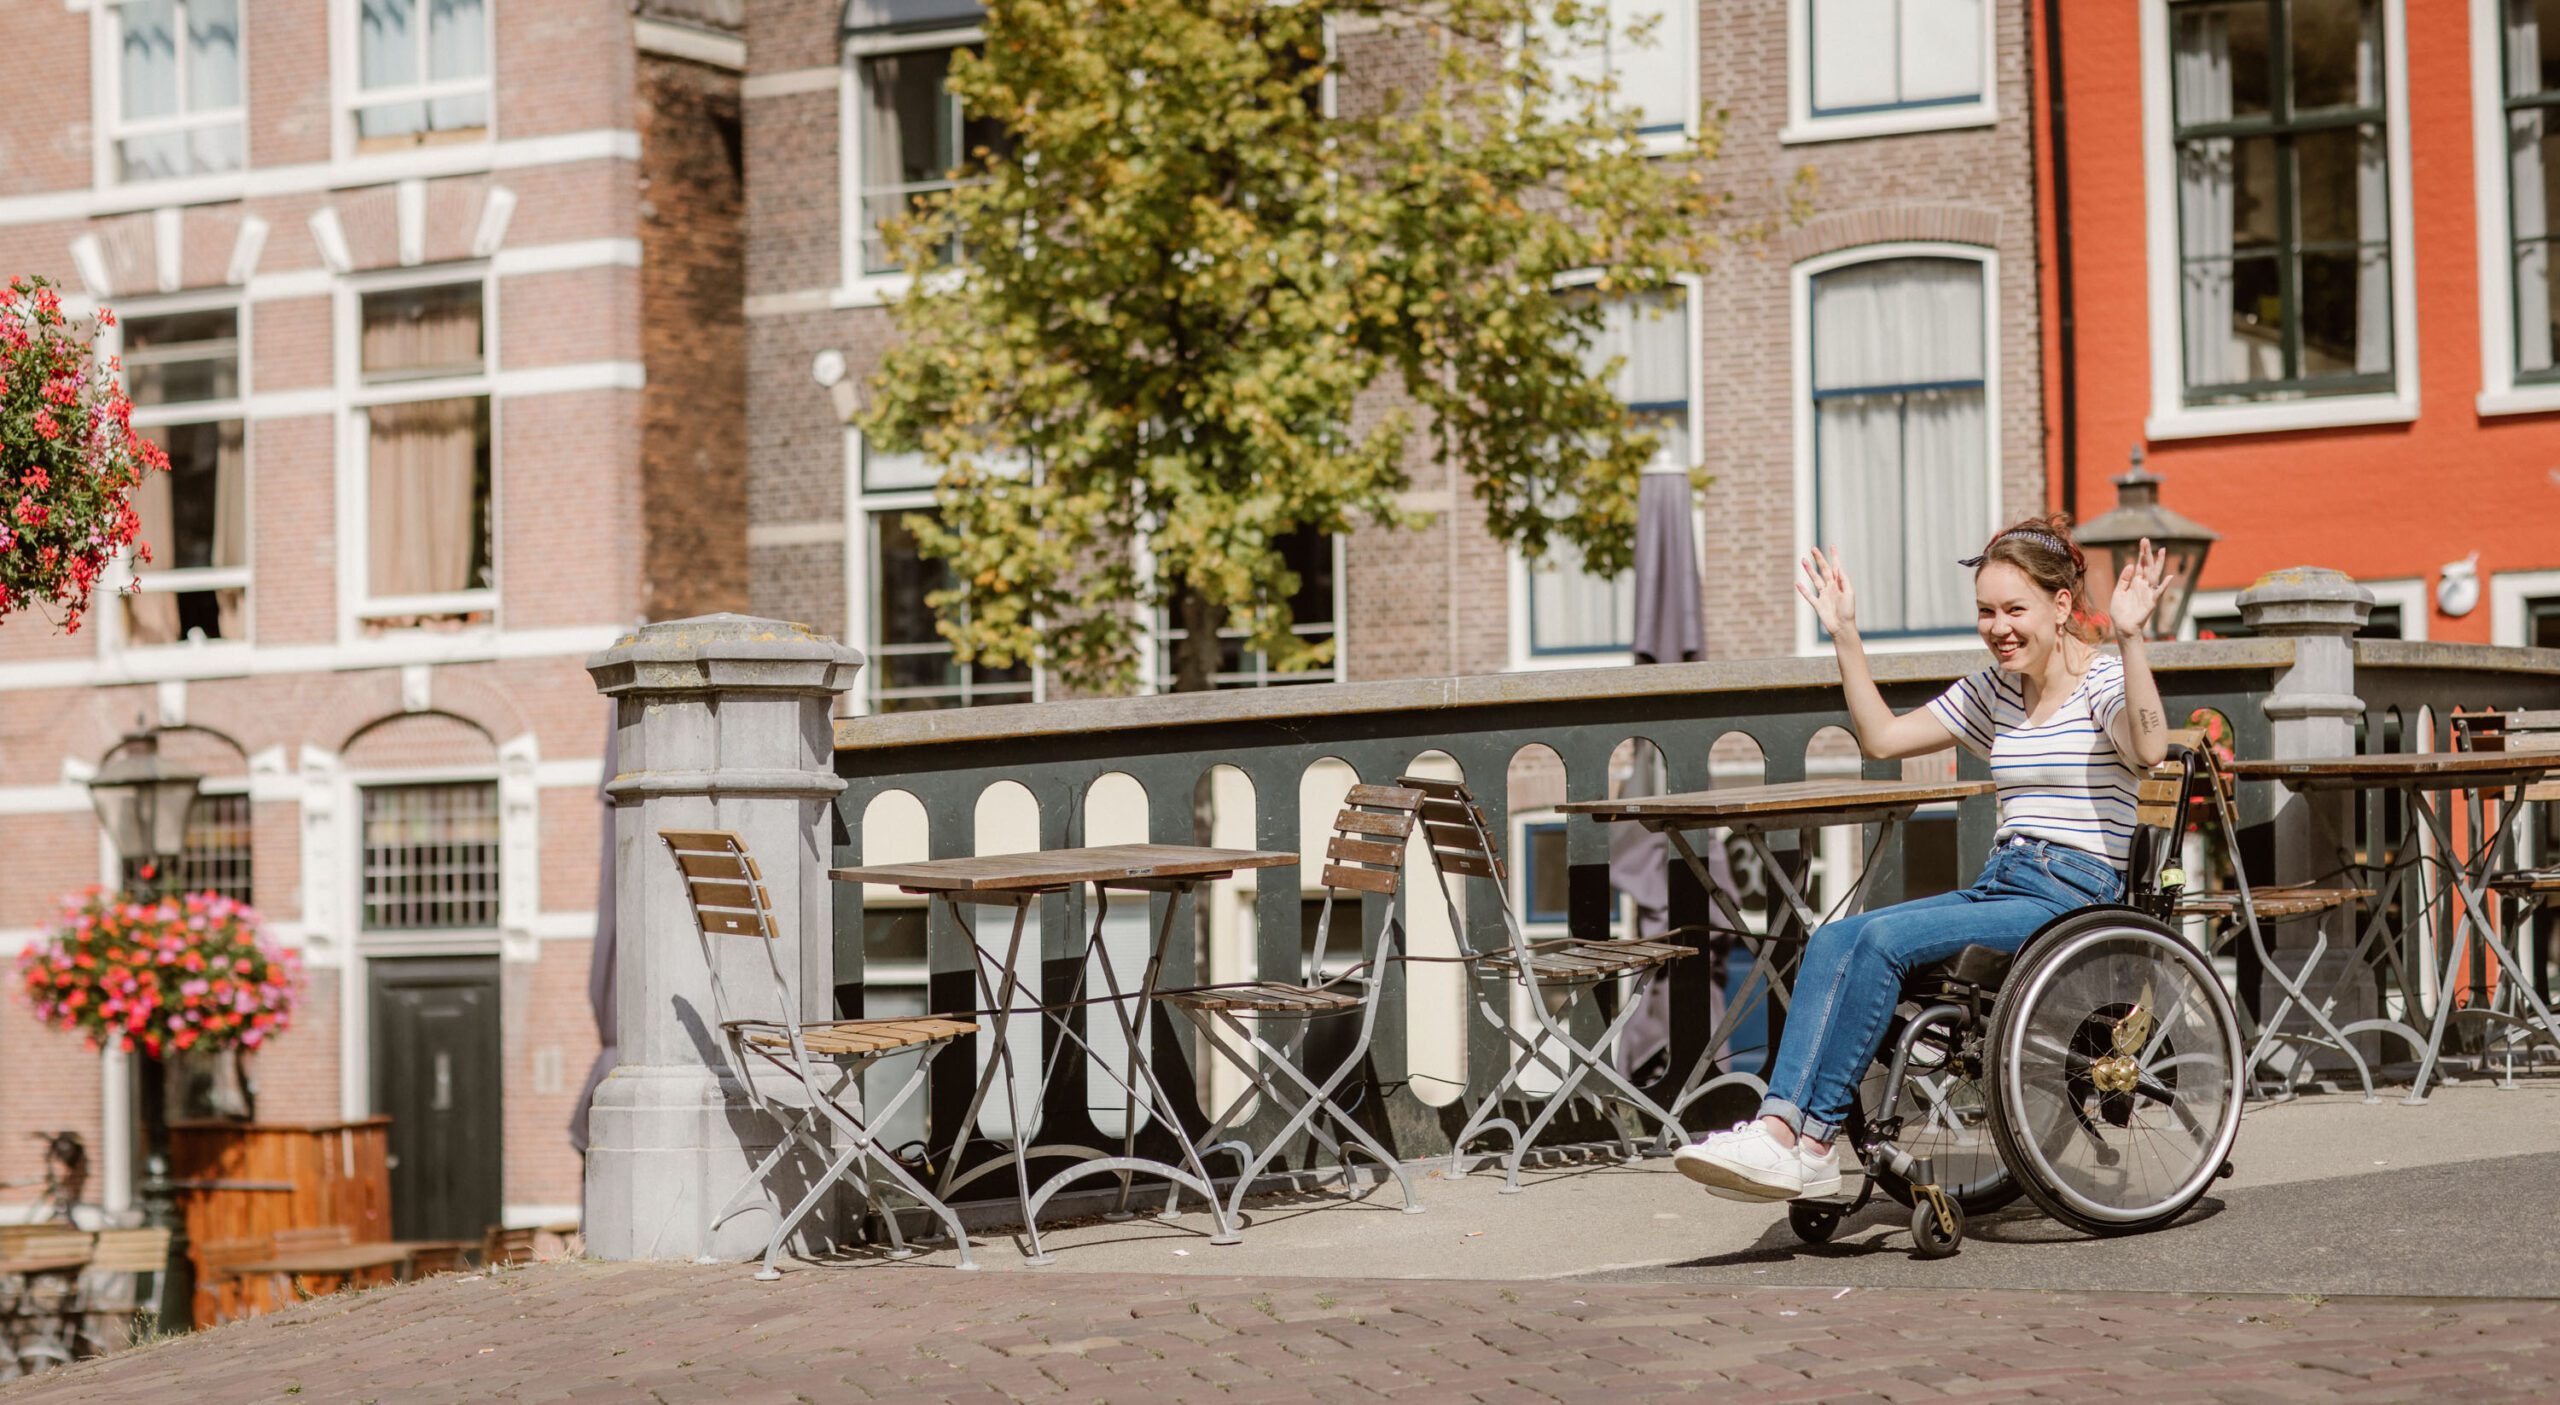 Foto van Marijn de Wijs; een stuk brug in Leiden. Rechts in beeld kom ik van de brug af gerold in mijn rolstoel. Ik ben een indo vrouw met opgestoken donker haar. Ik draag een hoge spijkerbroek en wit met blauw-gestreept shirt. Ik lach naar de camera en houd mijn handen in de lucht. Op de achtergrond zijn panden te zien en op de brug staan een paar terrastafels met stoelen.